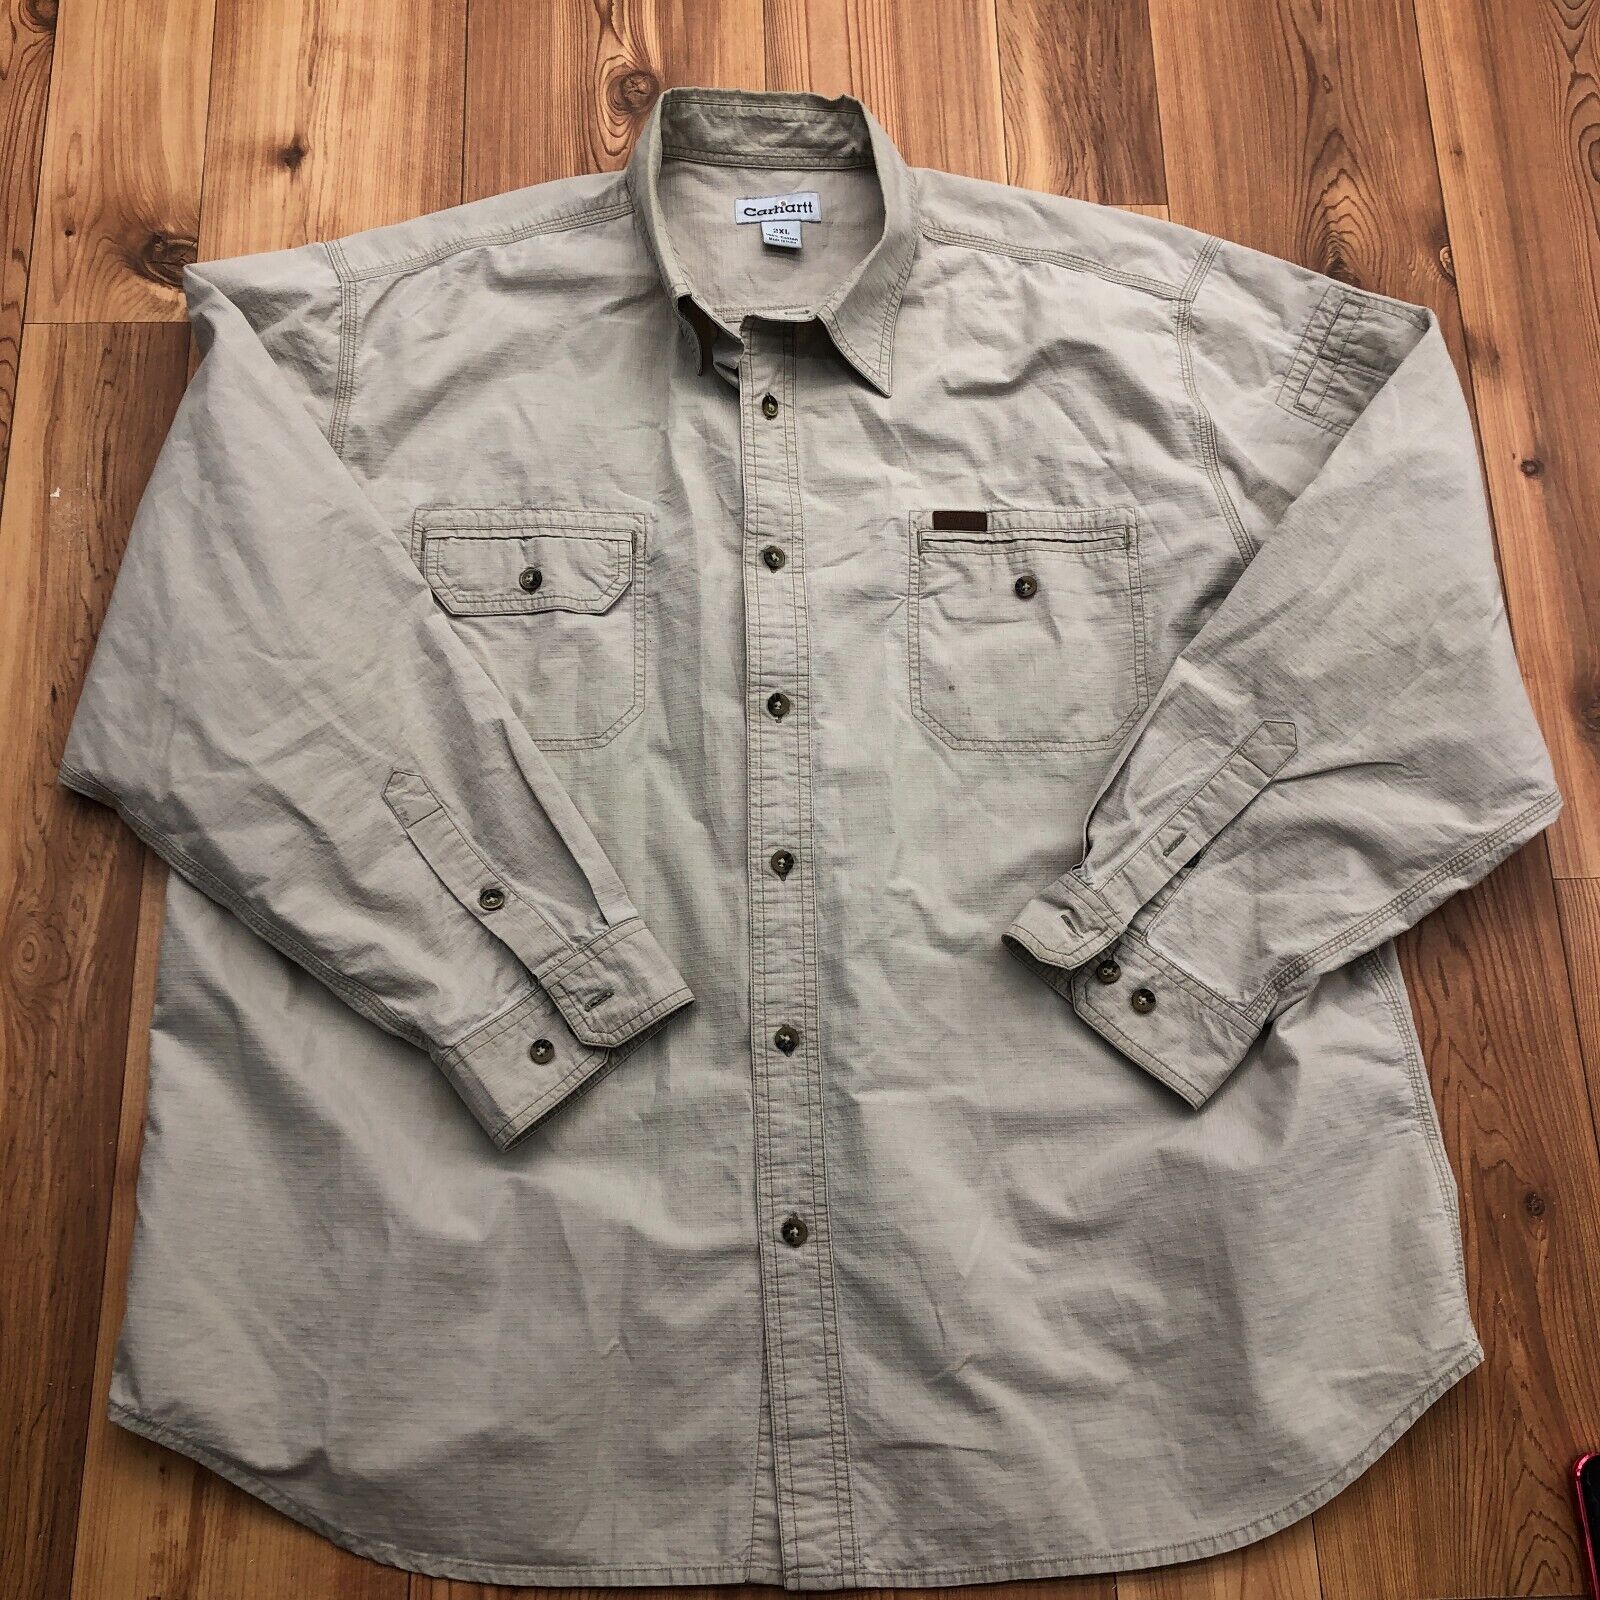 Carhartt Beige Button Up Long Sleeve Cotton Regular Fit Shirt Men's Size 2XL